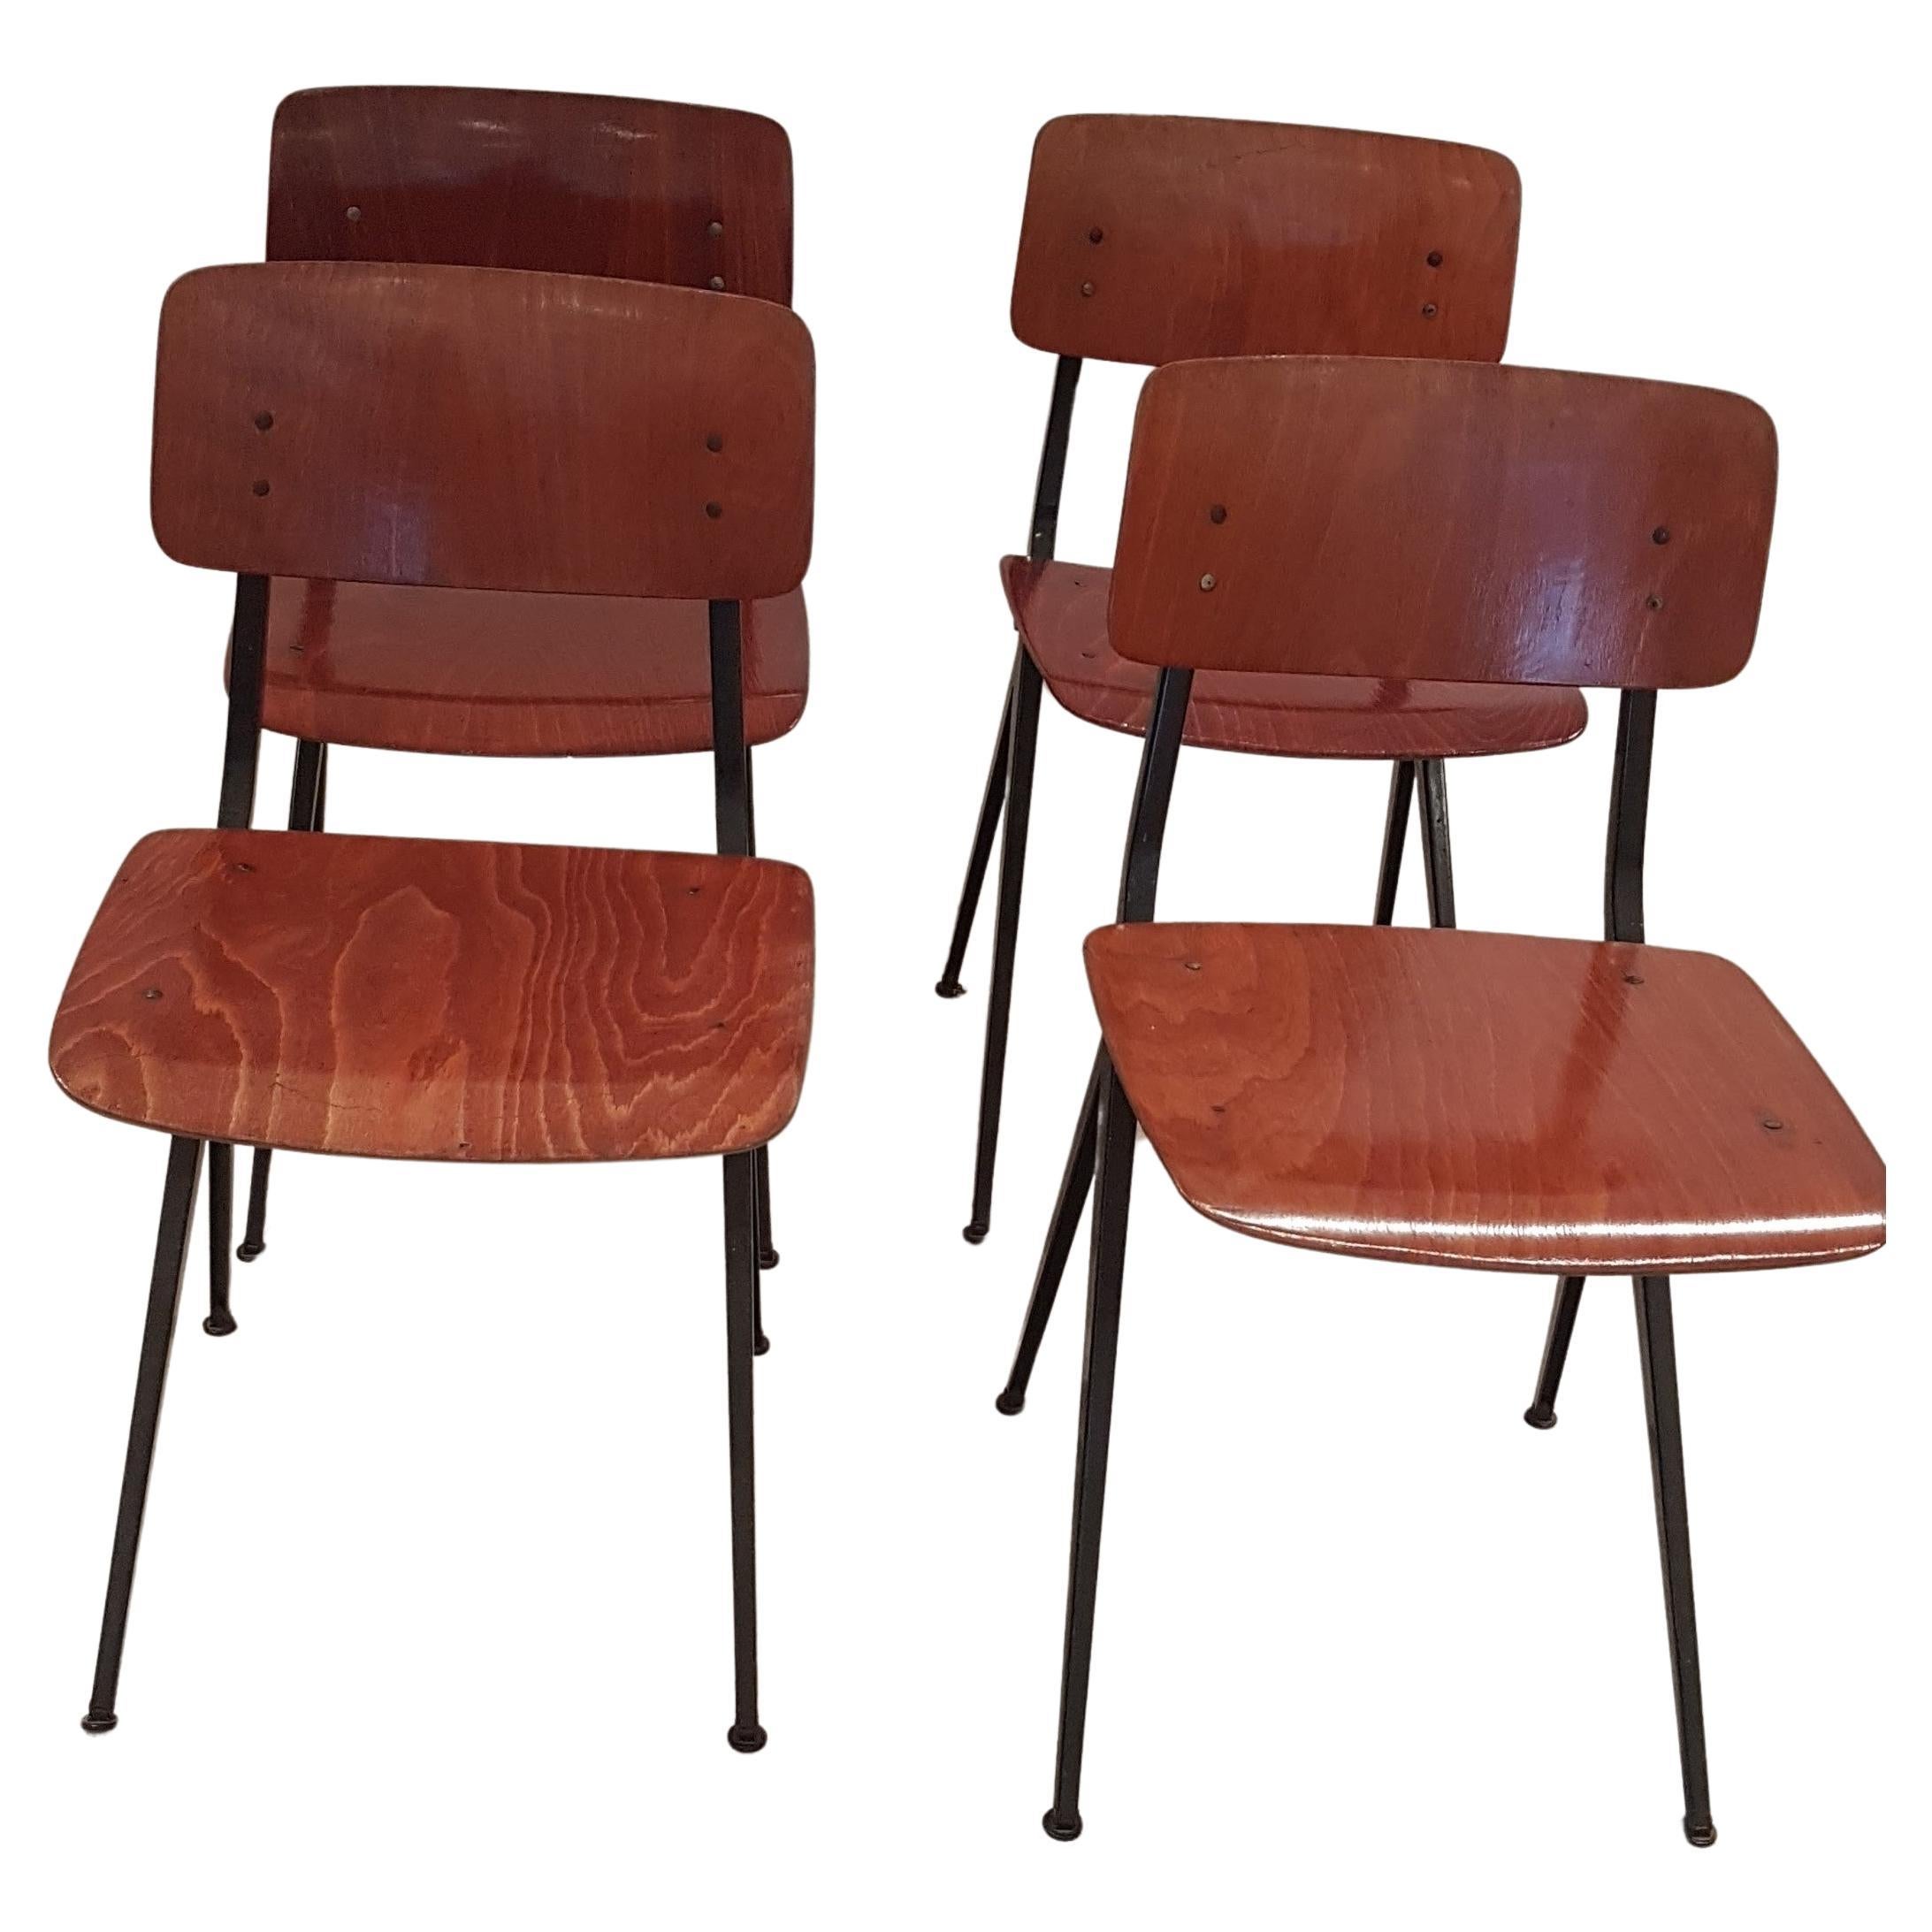 Vier Stühle im Industriestil von Marko Holland. Diese bequemen, zweckmäßigen Stühle haben schöne, gealterte Sitzflächen und Rückenlehnen aus Teakholz und schwarz lackierte, minimalistische Metallrahmen. Durch ihre Schlichtheit passen sie in jedes